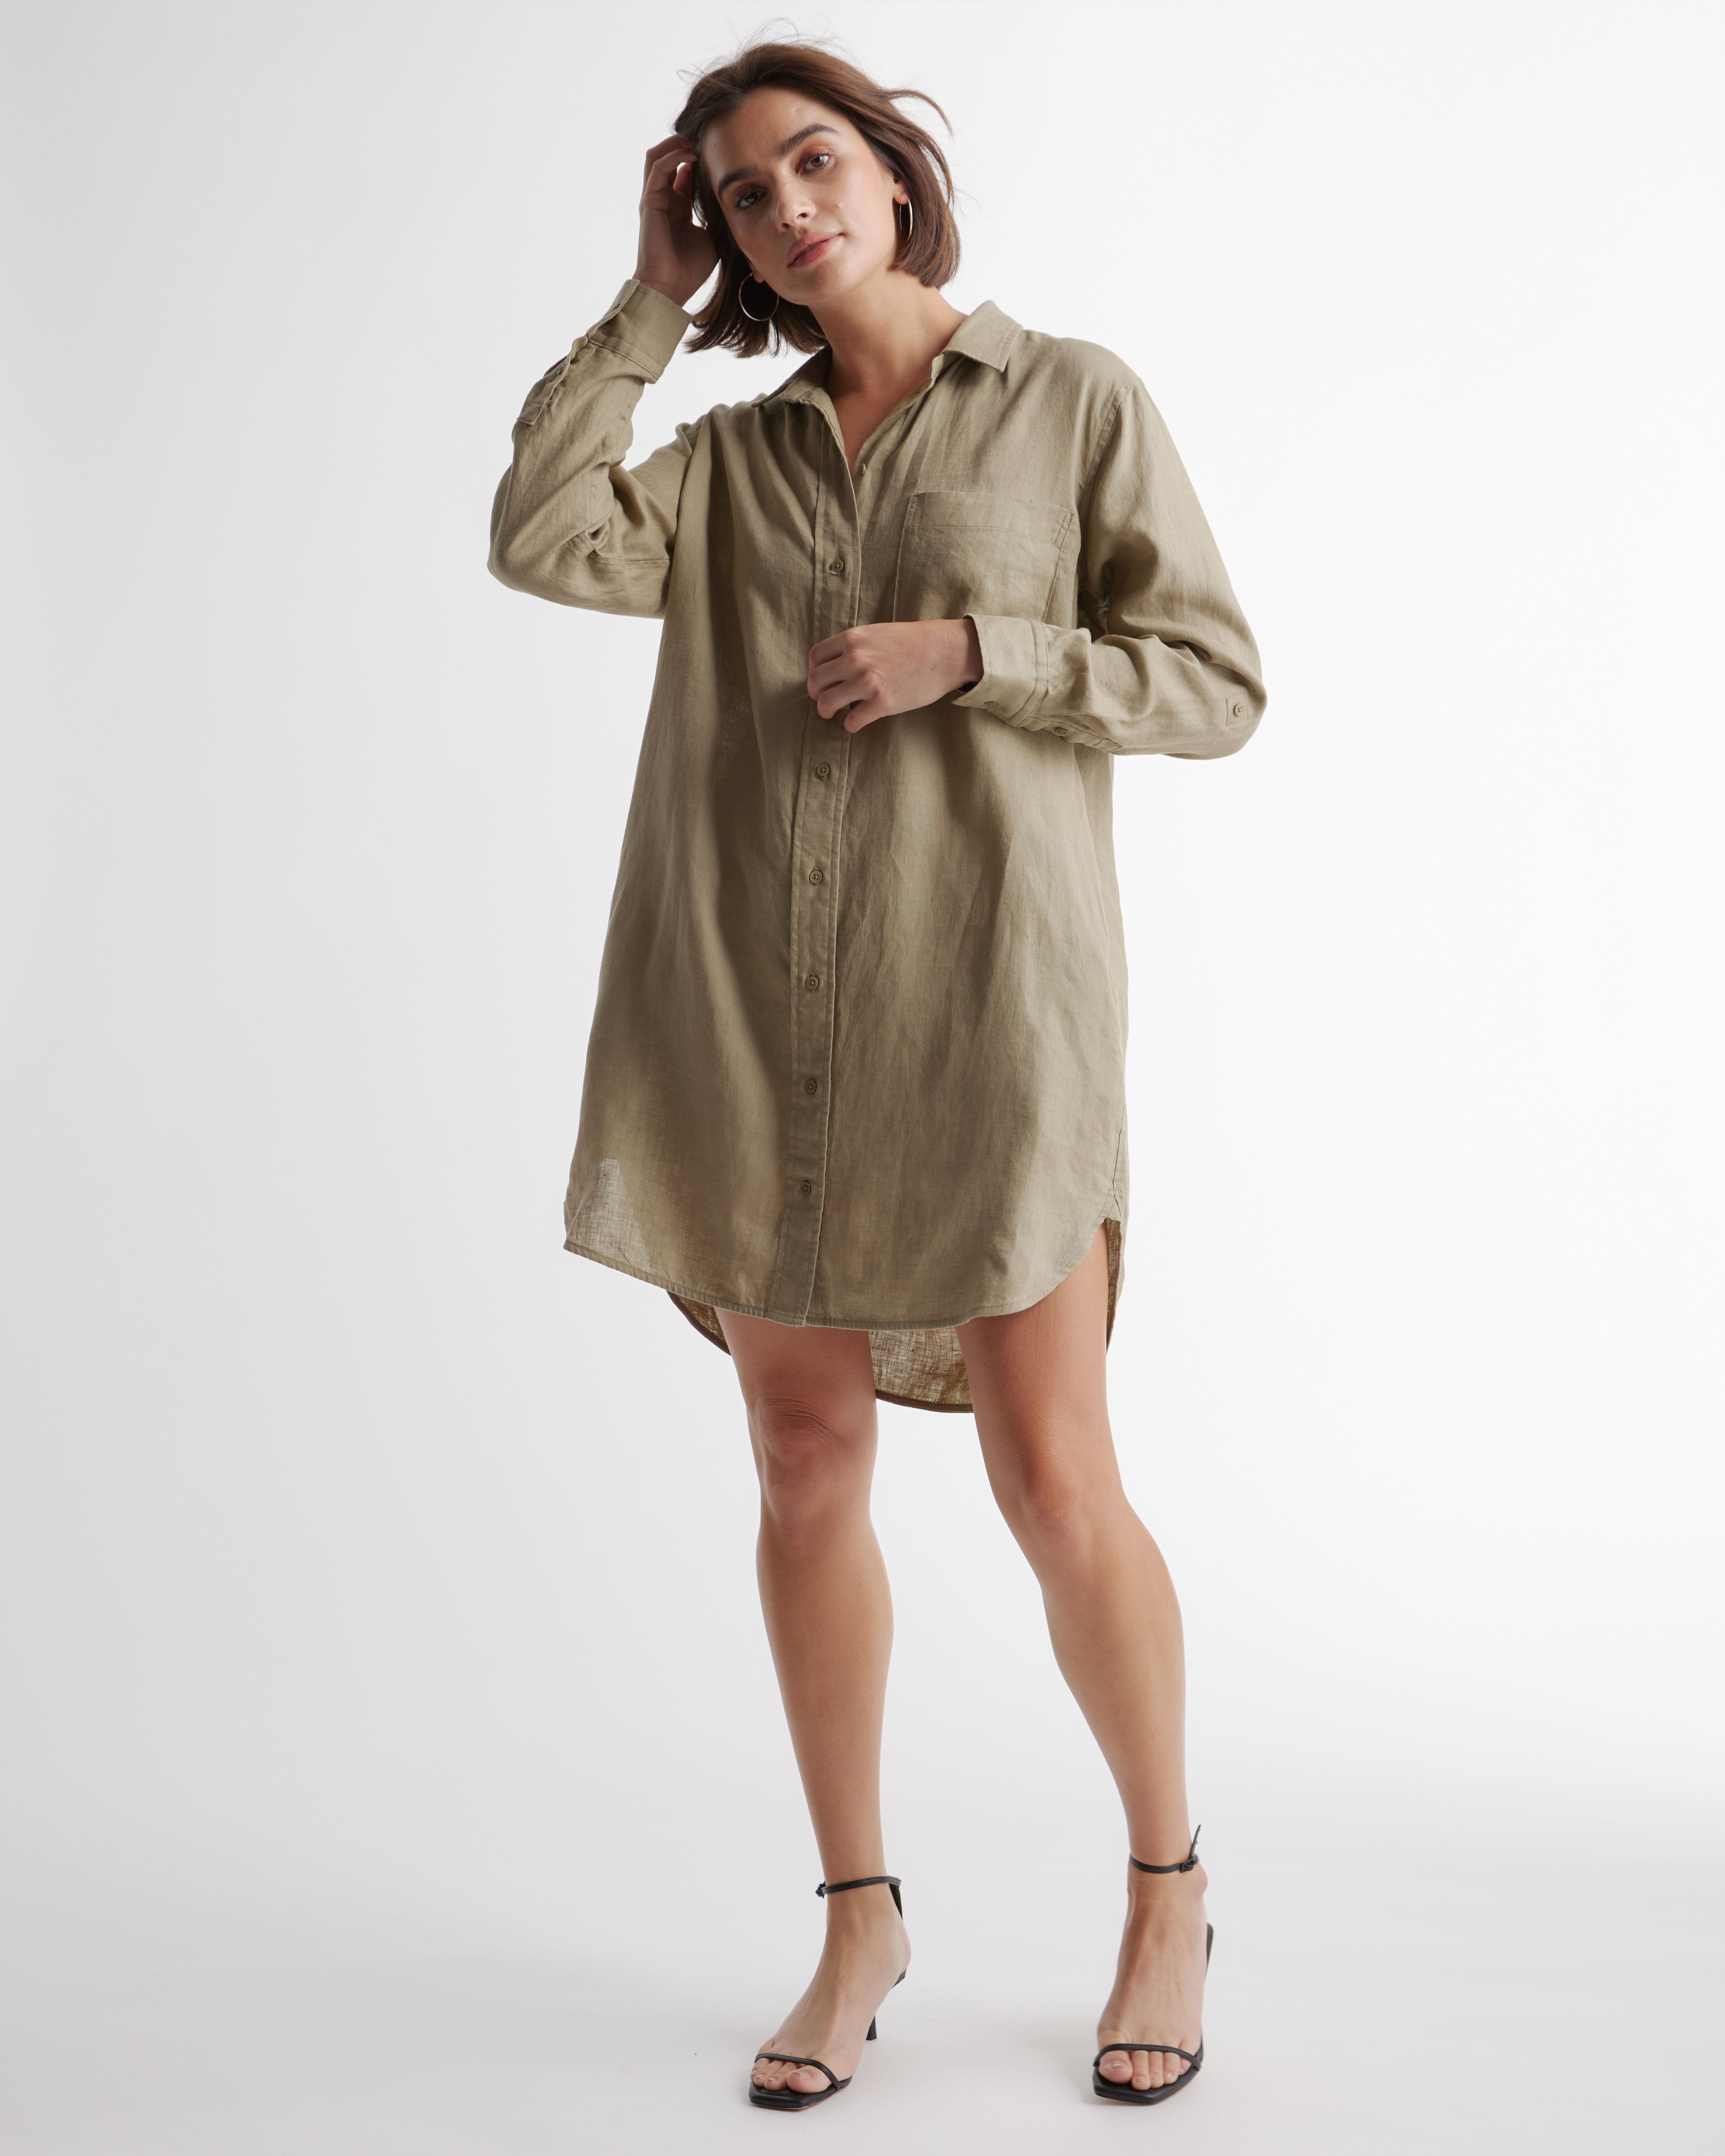 Quince European Linen Long Sleeve Maxi Shirt Dress sz S Small Sand-Beige  Belted